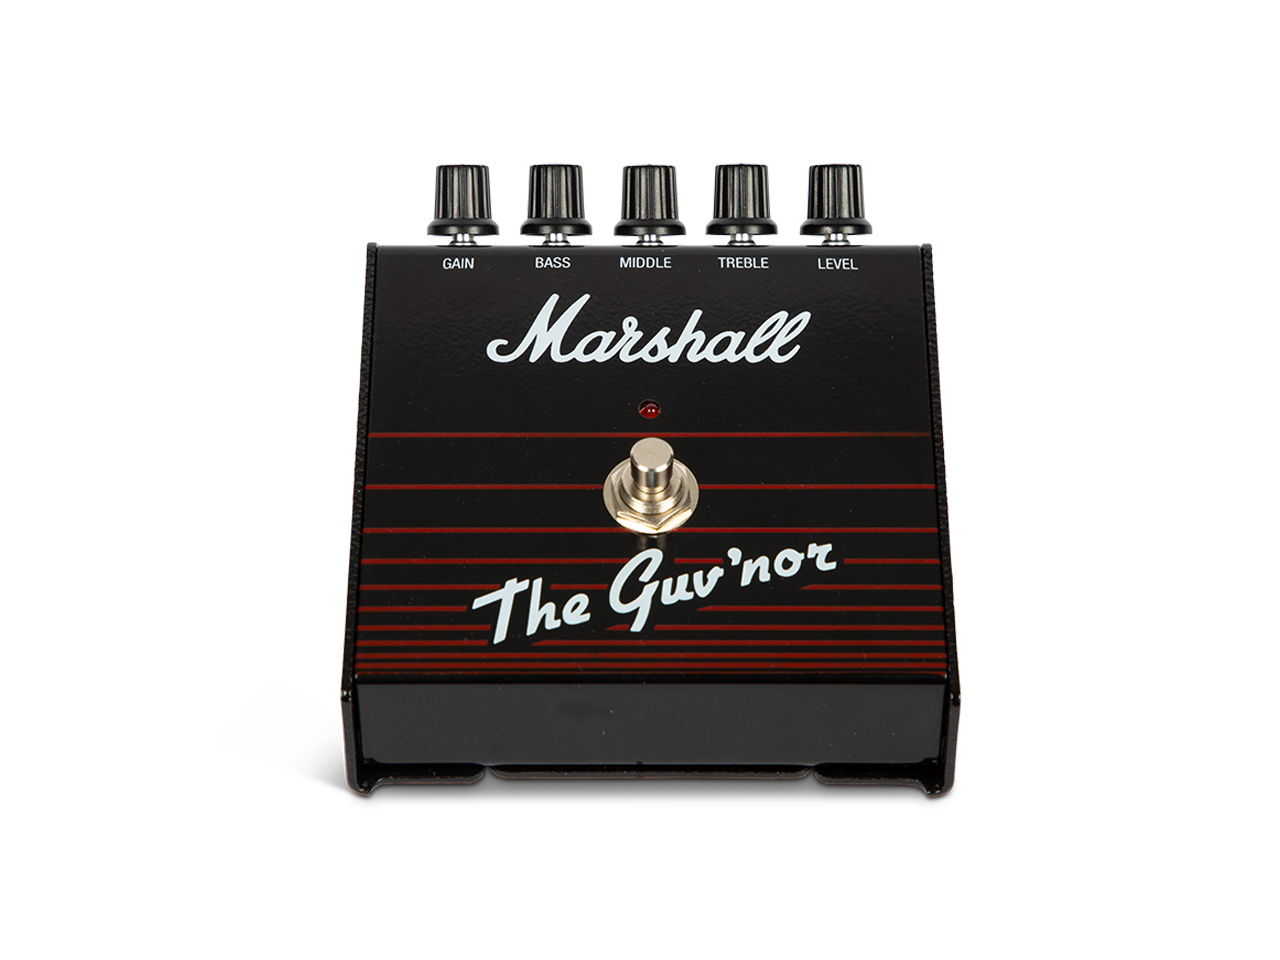 【即納可能】Marshall(マーシャル) THE GUV‘NOR Reissue (ディストーション) お茶の水駅前店(東京)